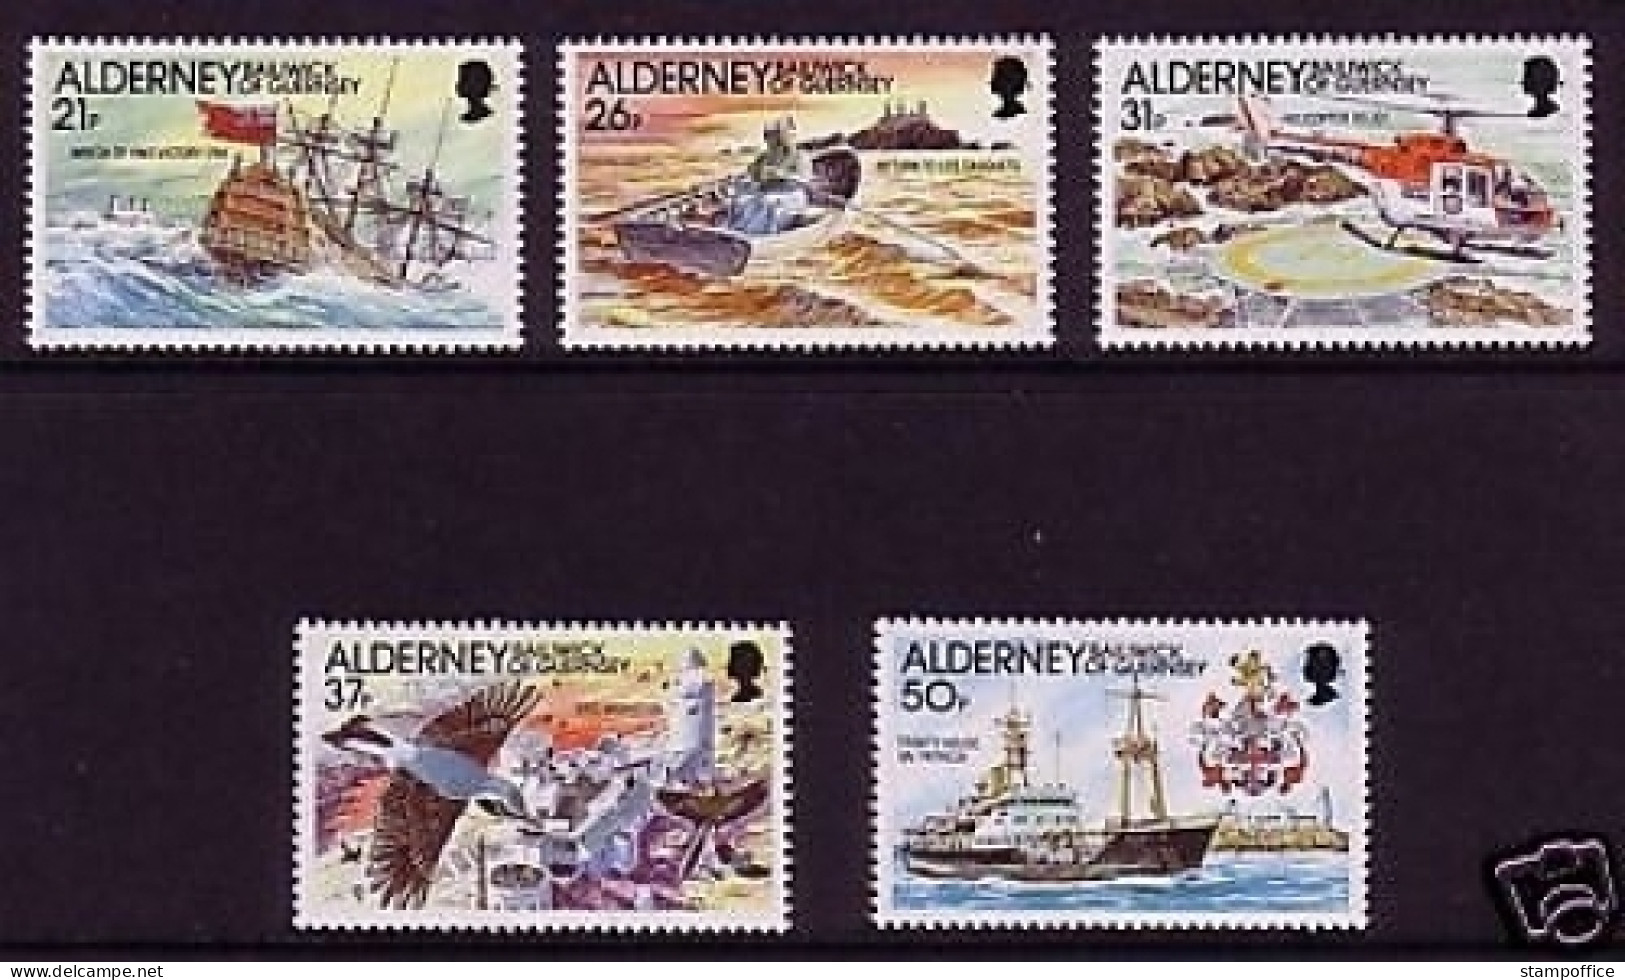 ALDERNEY MI-NR. 49-53 POSTFRISCH(MINT) LEUCHTFEUER 1991 LEUCHTTURM - Alderney